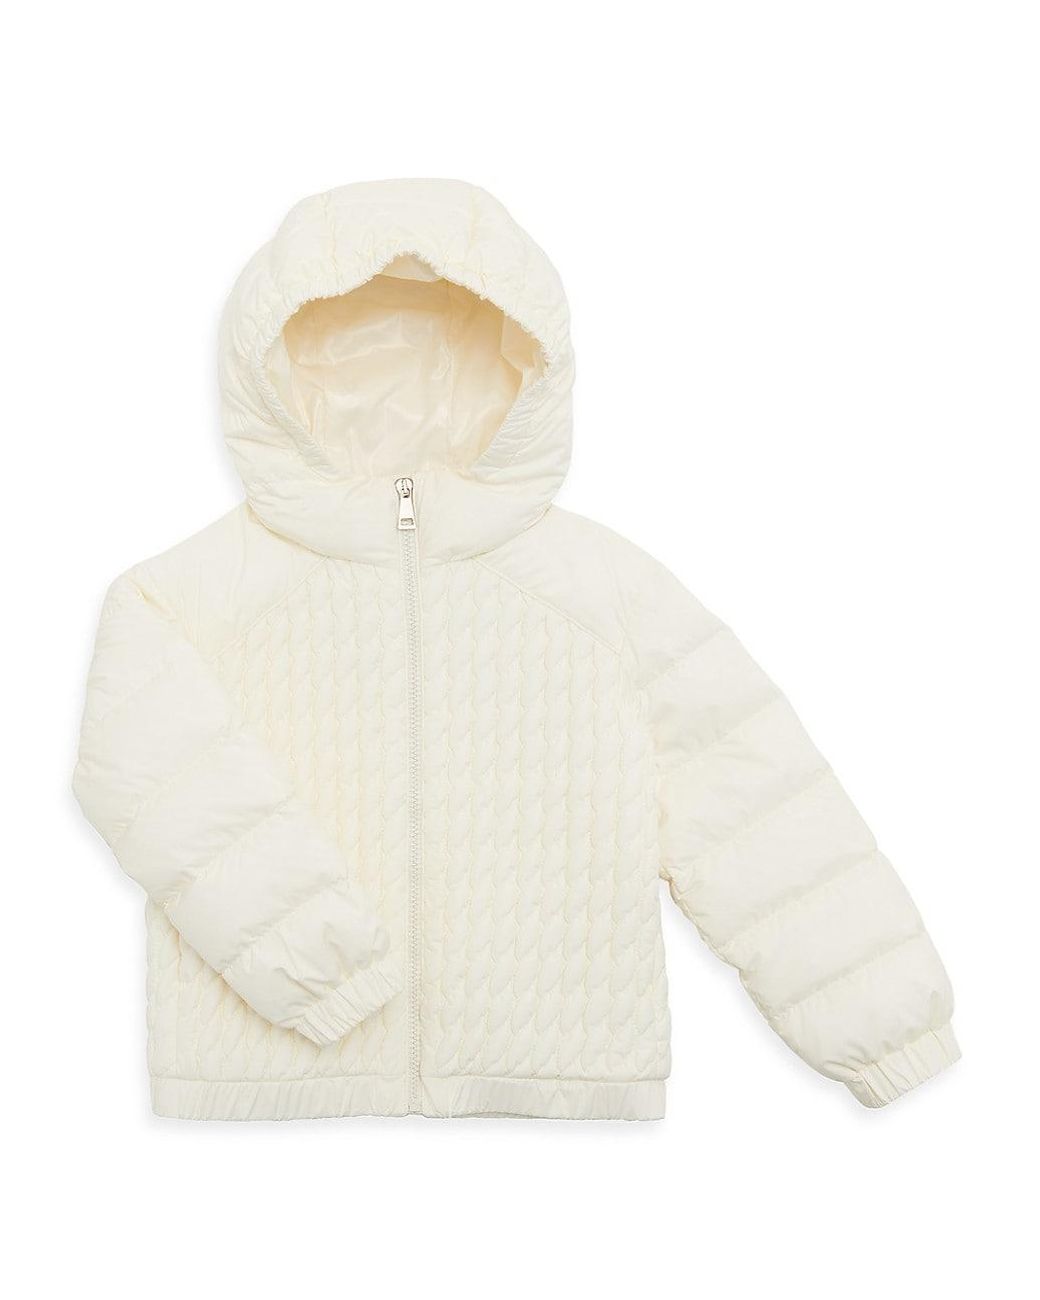 Moncler Little Girl's & Girl's Arylam Jacket in White | Lyst